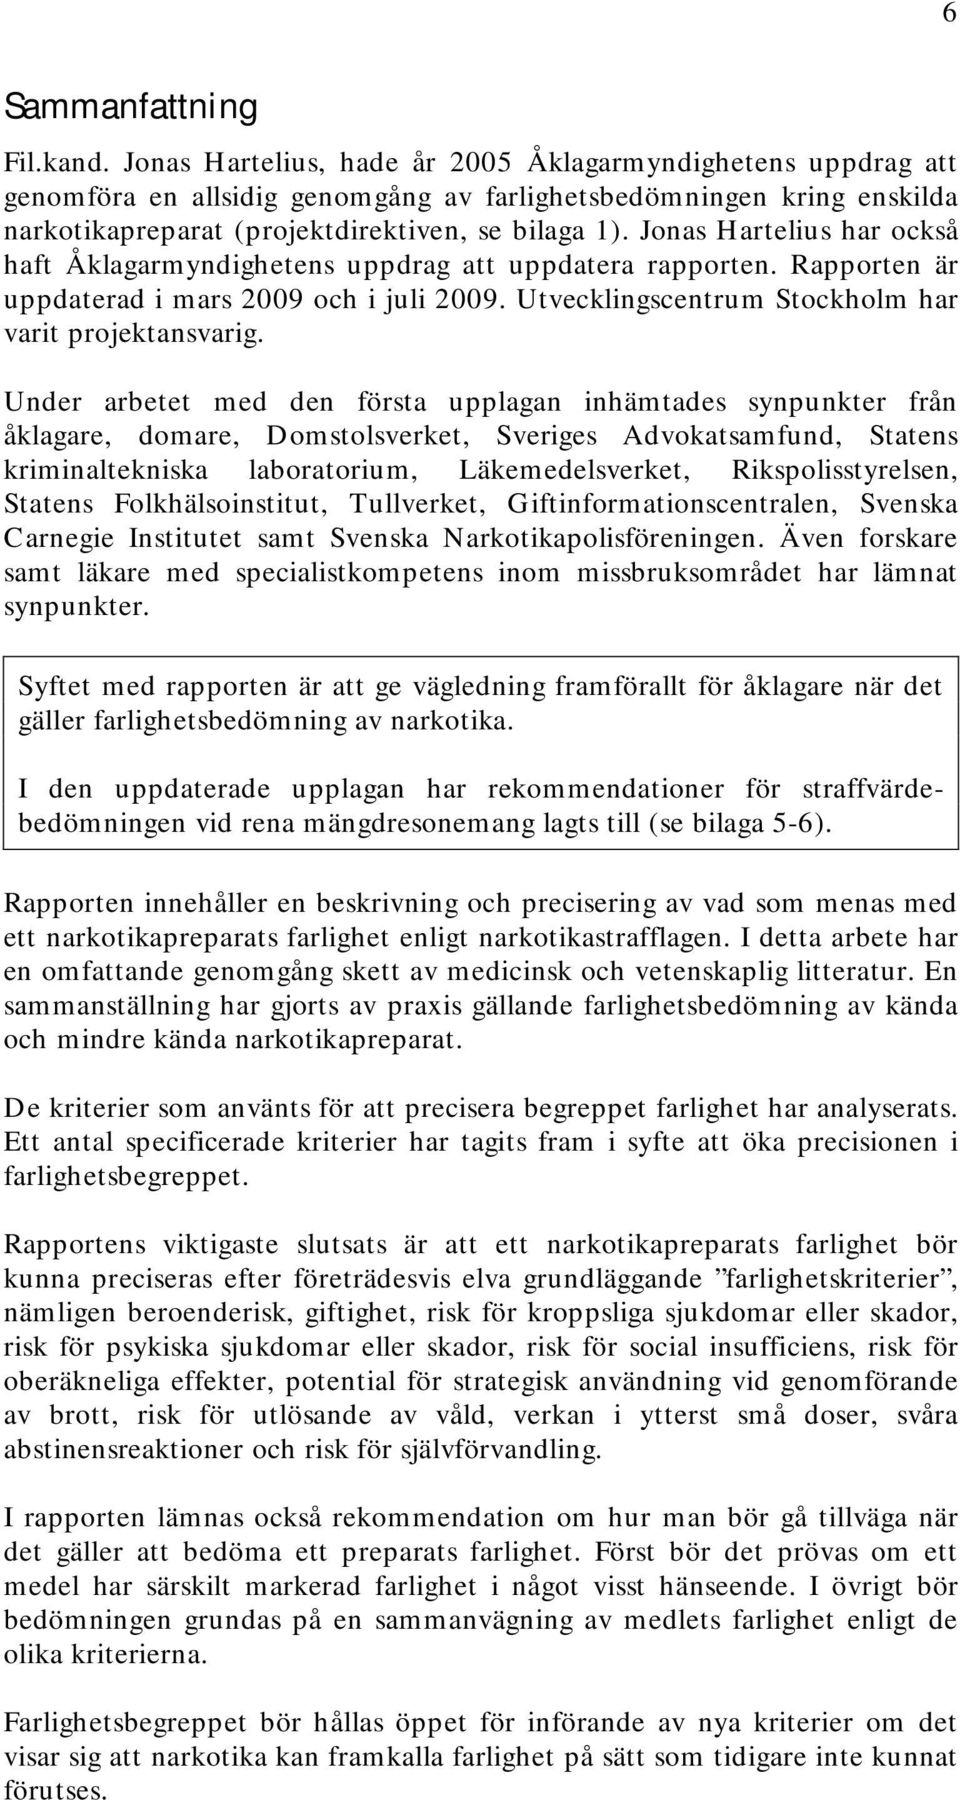 Jonas Hartelius har också haft Åklagarmyndighetens uppdrag att uppdatera rapporten. Rapporten är uppdaterad i mars 2009 och i juli 2009. Utvecklingscentrum Stockholm har varit projektansvarig.